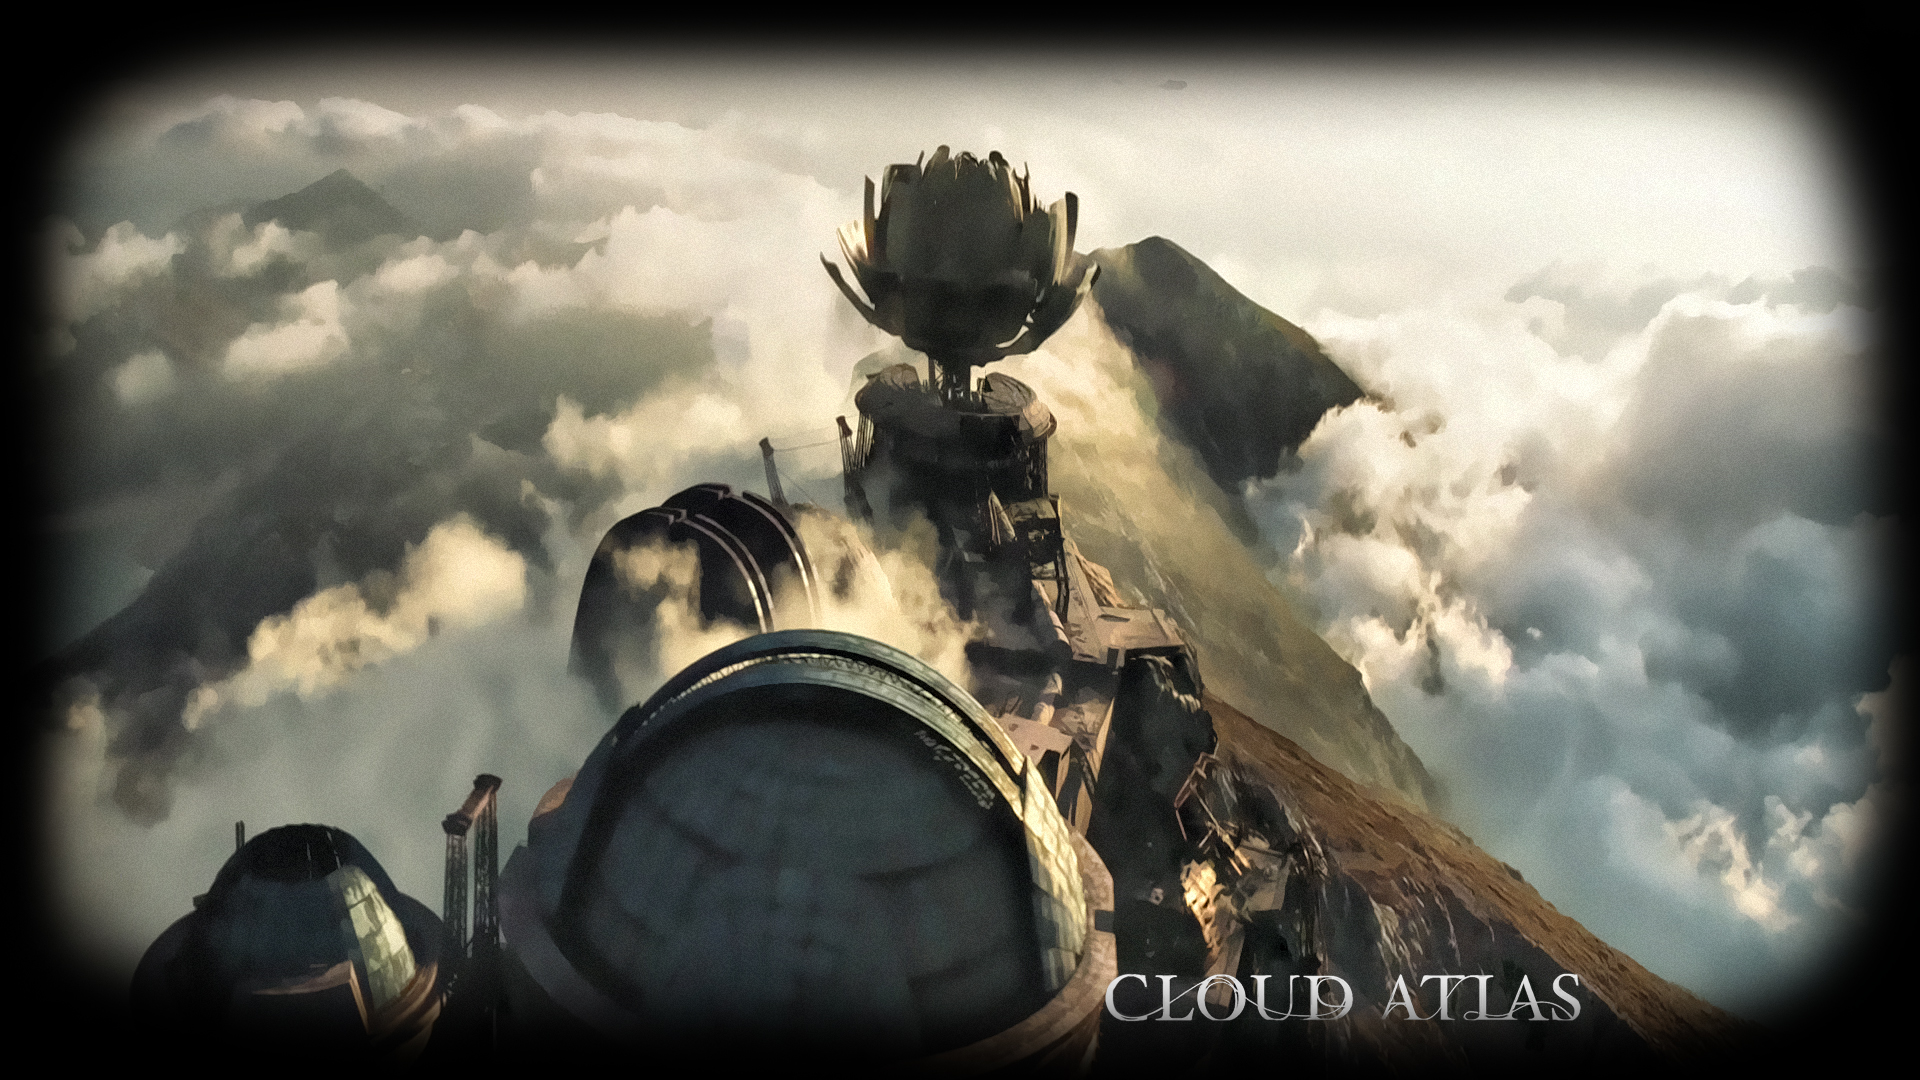 fond d'écran cloud atlas,ciel,compositing numérique,oeuvre de cg,nuage,monde